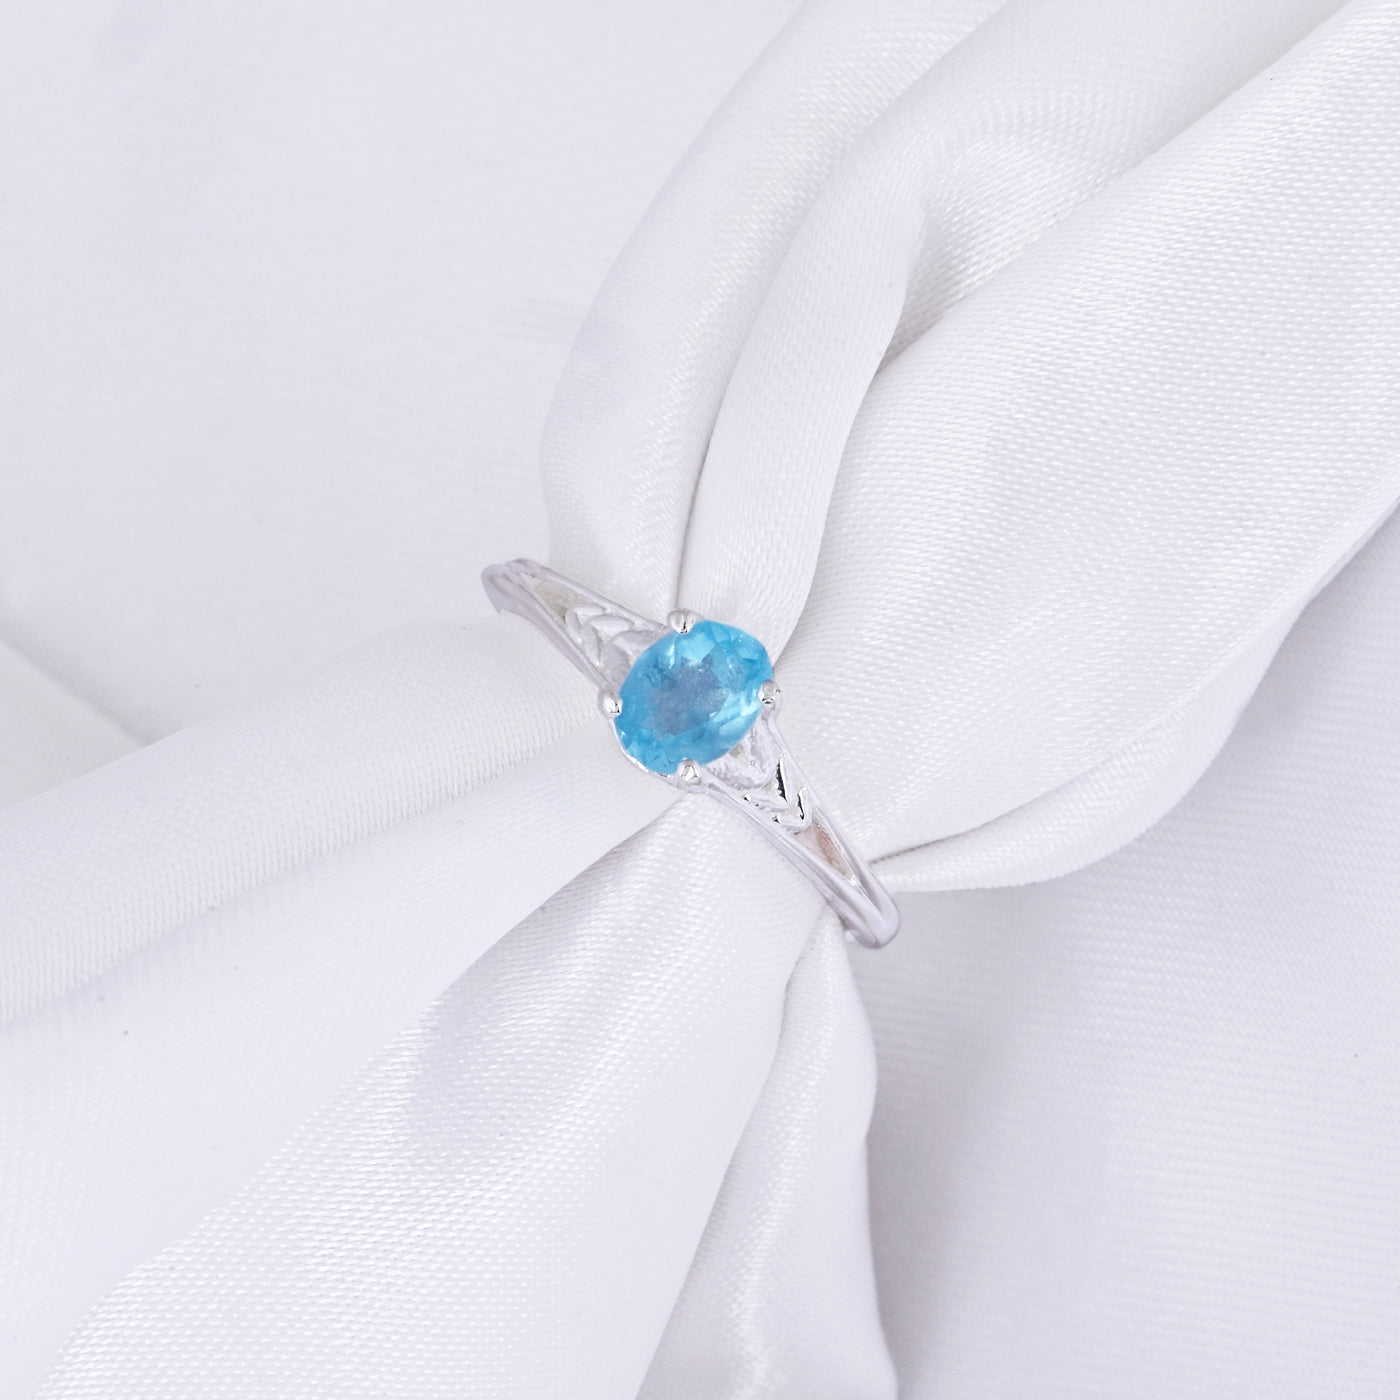 Paraiba Blue Topaz Gems Diamond Engagement Ring